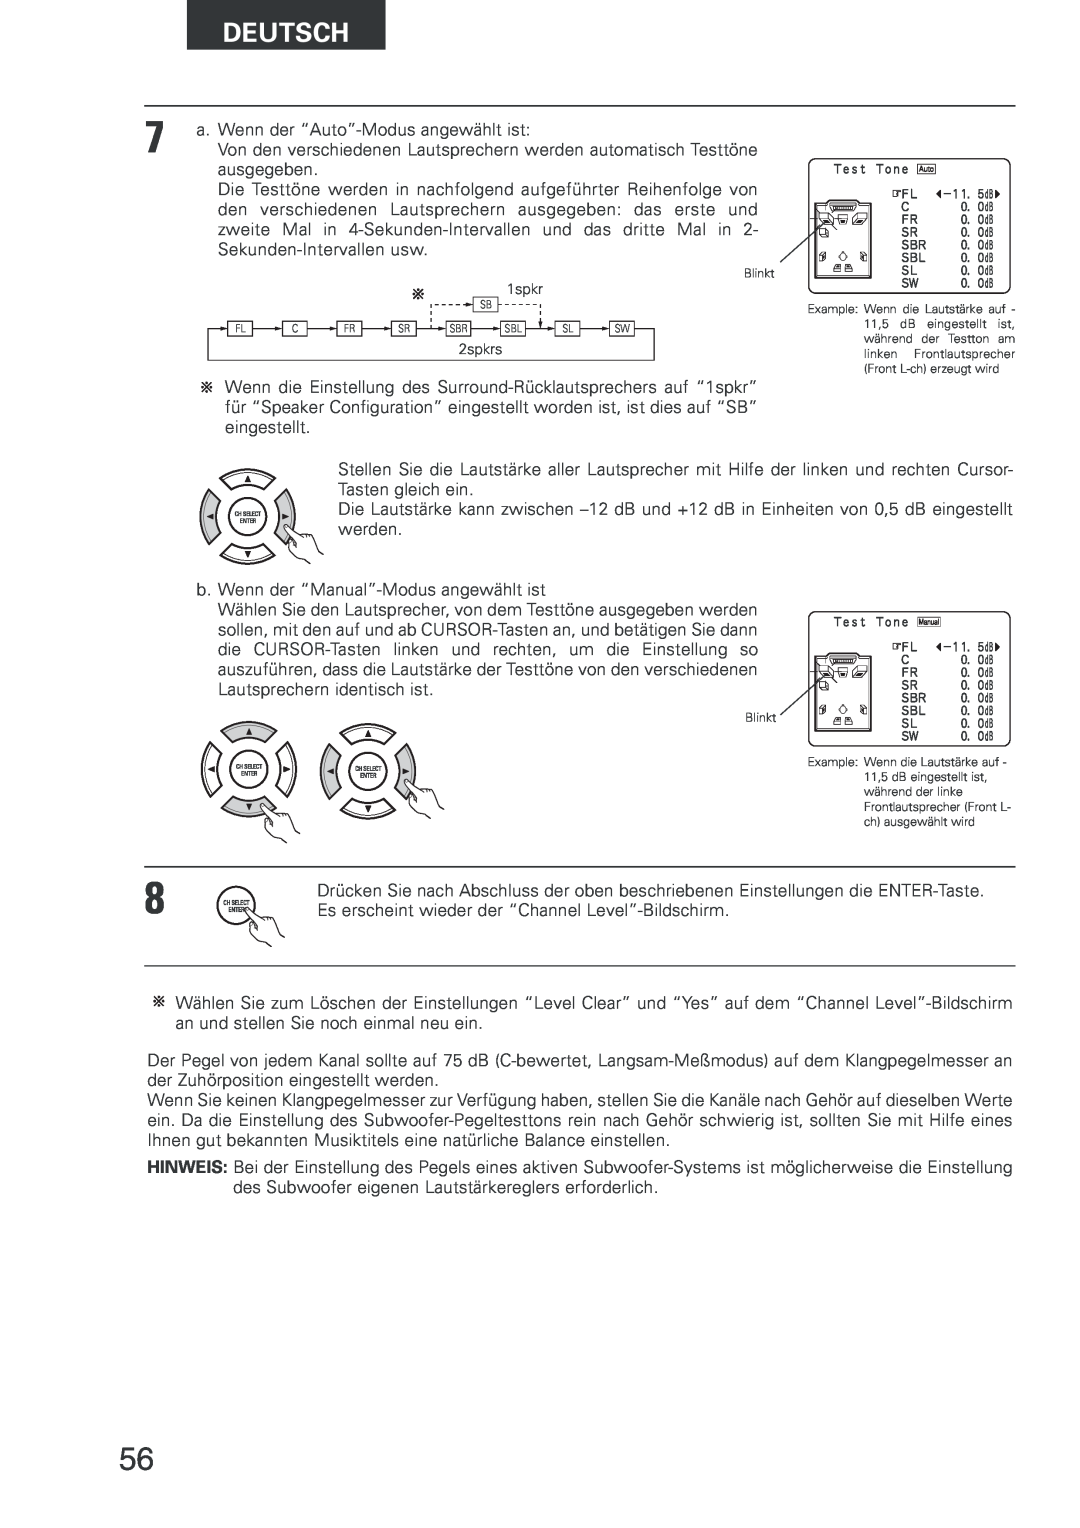 Denon AVR-2803 manual Deutsch, a. Wenn der “Auto”-Modus angewählt ist 